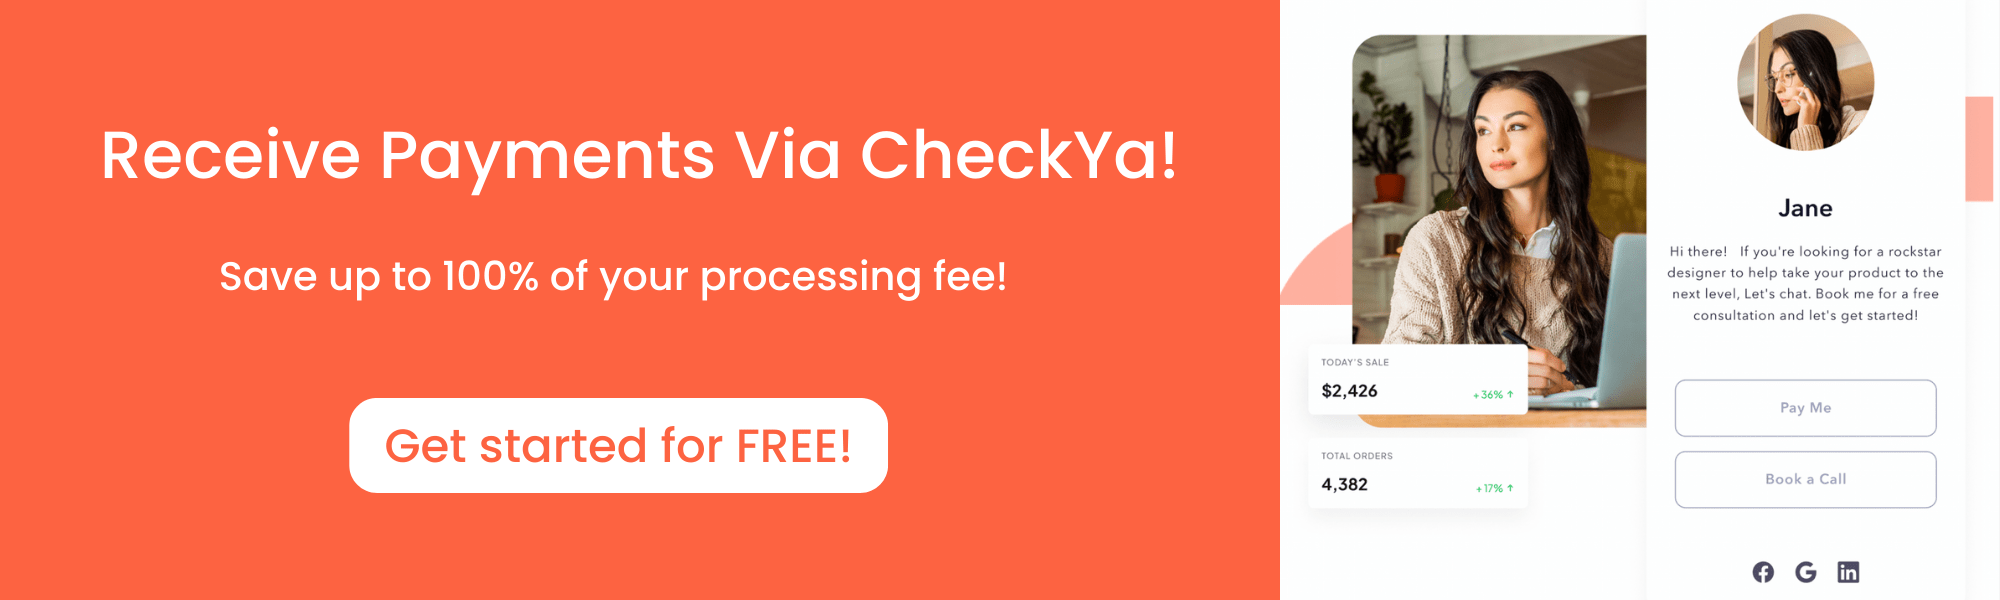 Receive payments via CheckYa